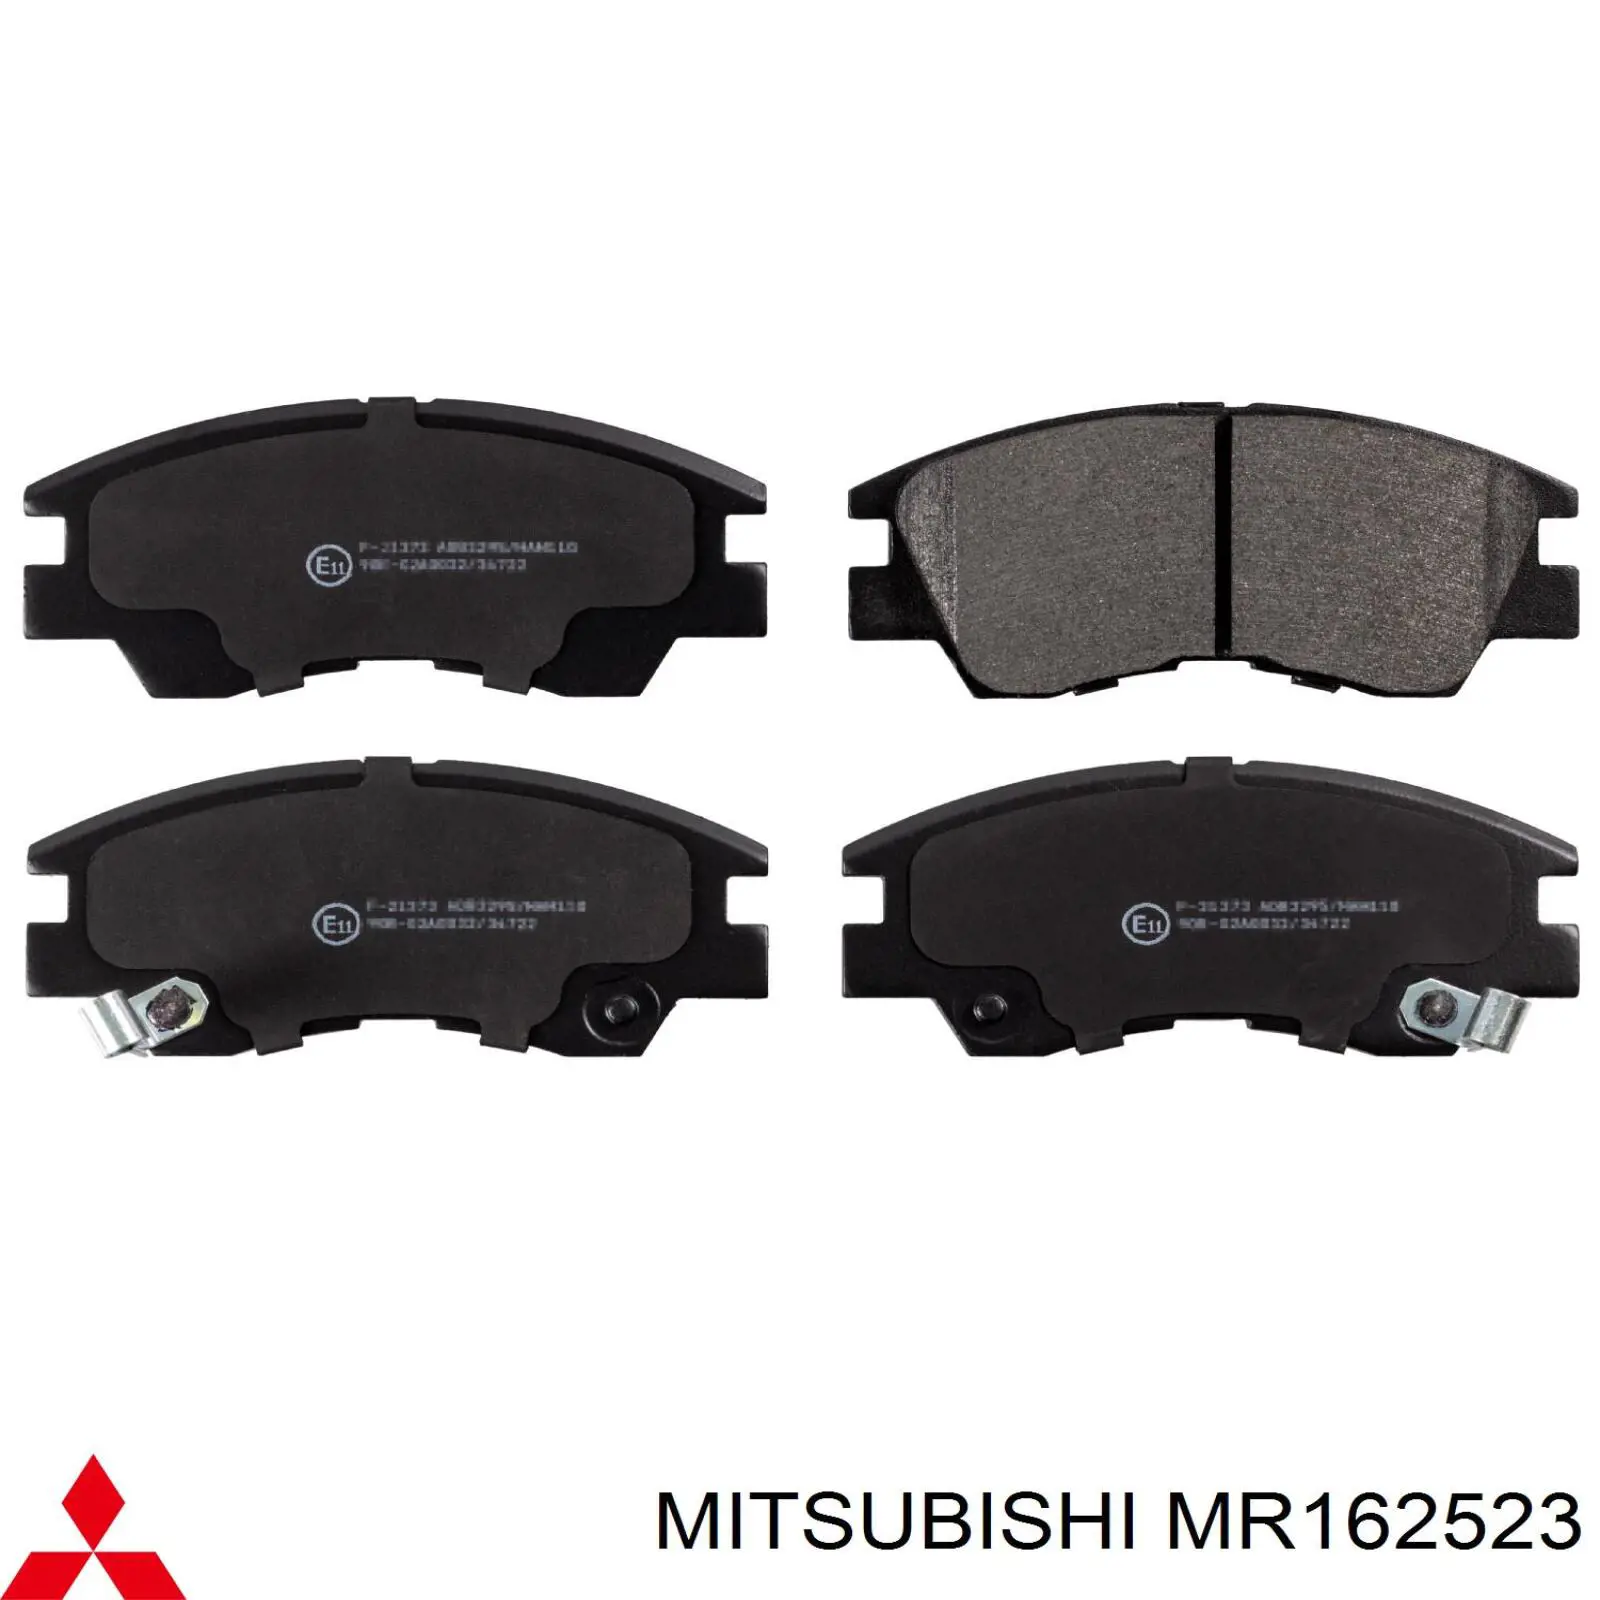 MR162523 Mitsubishi pastillas de freno delanteras